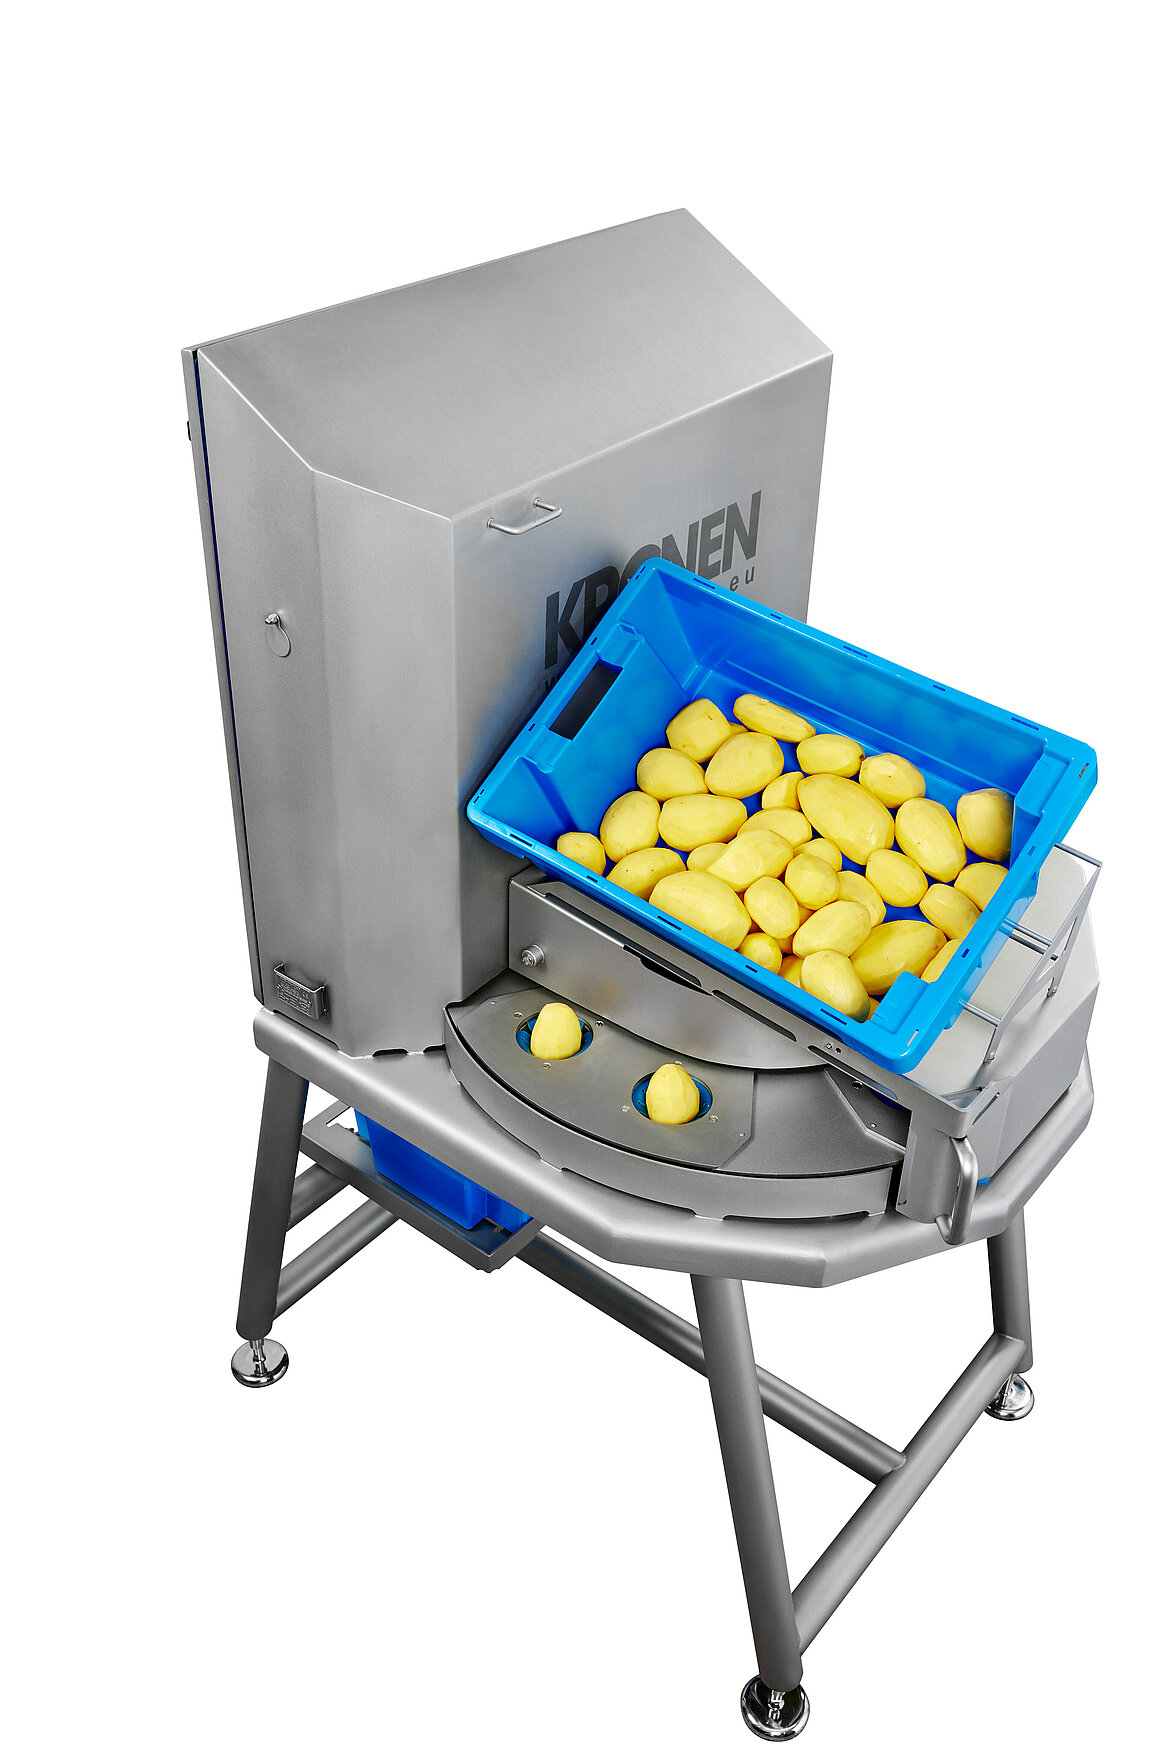 Las patatas se colocan en los portaproductos de la Tona V y se transportan al proceso de corte.